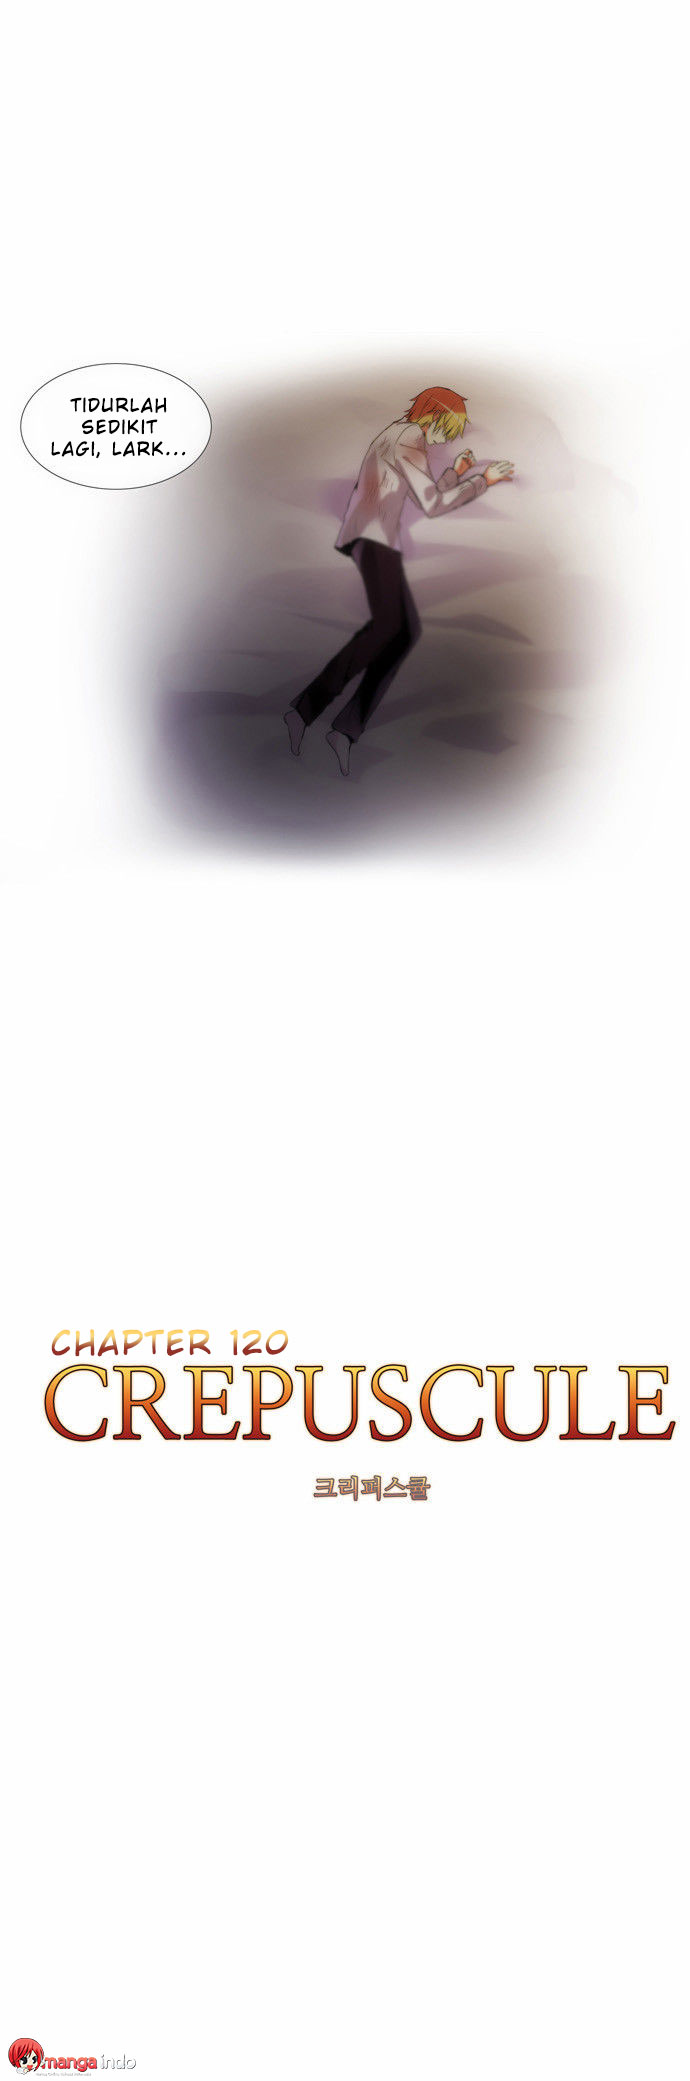 Crepuscule Chapter 120